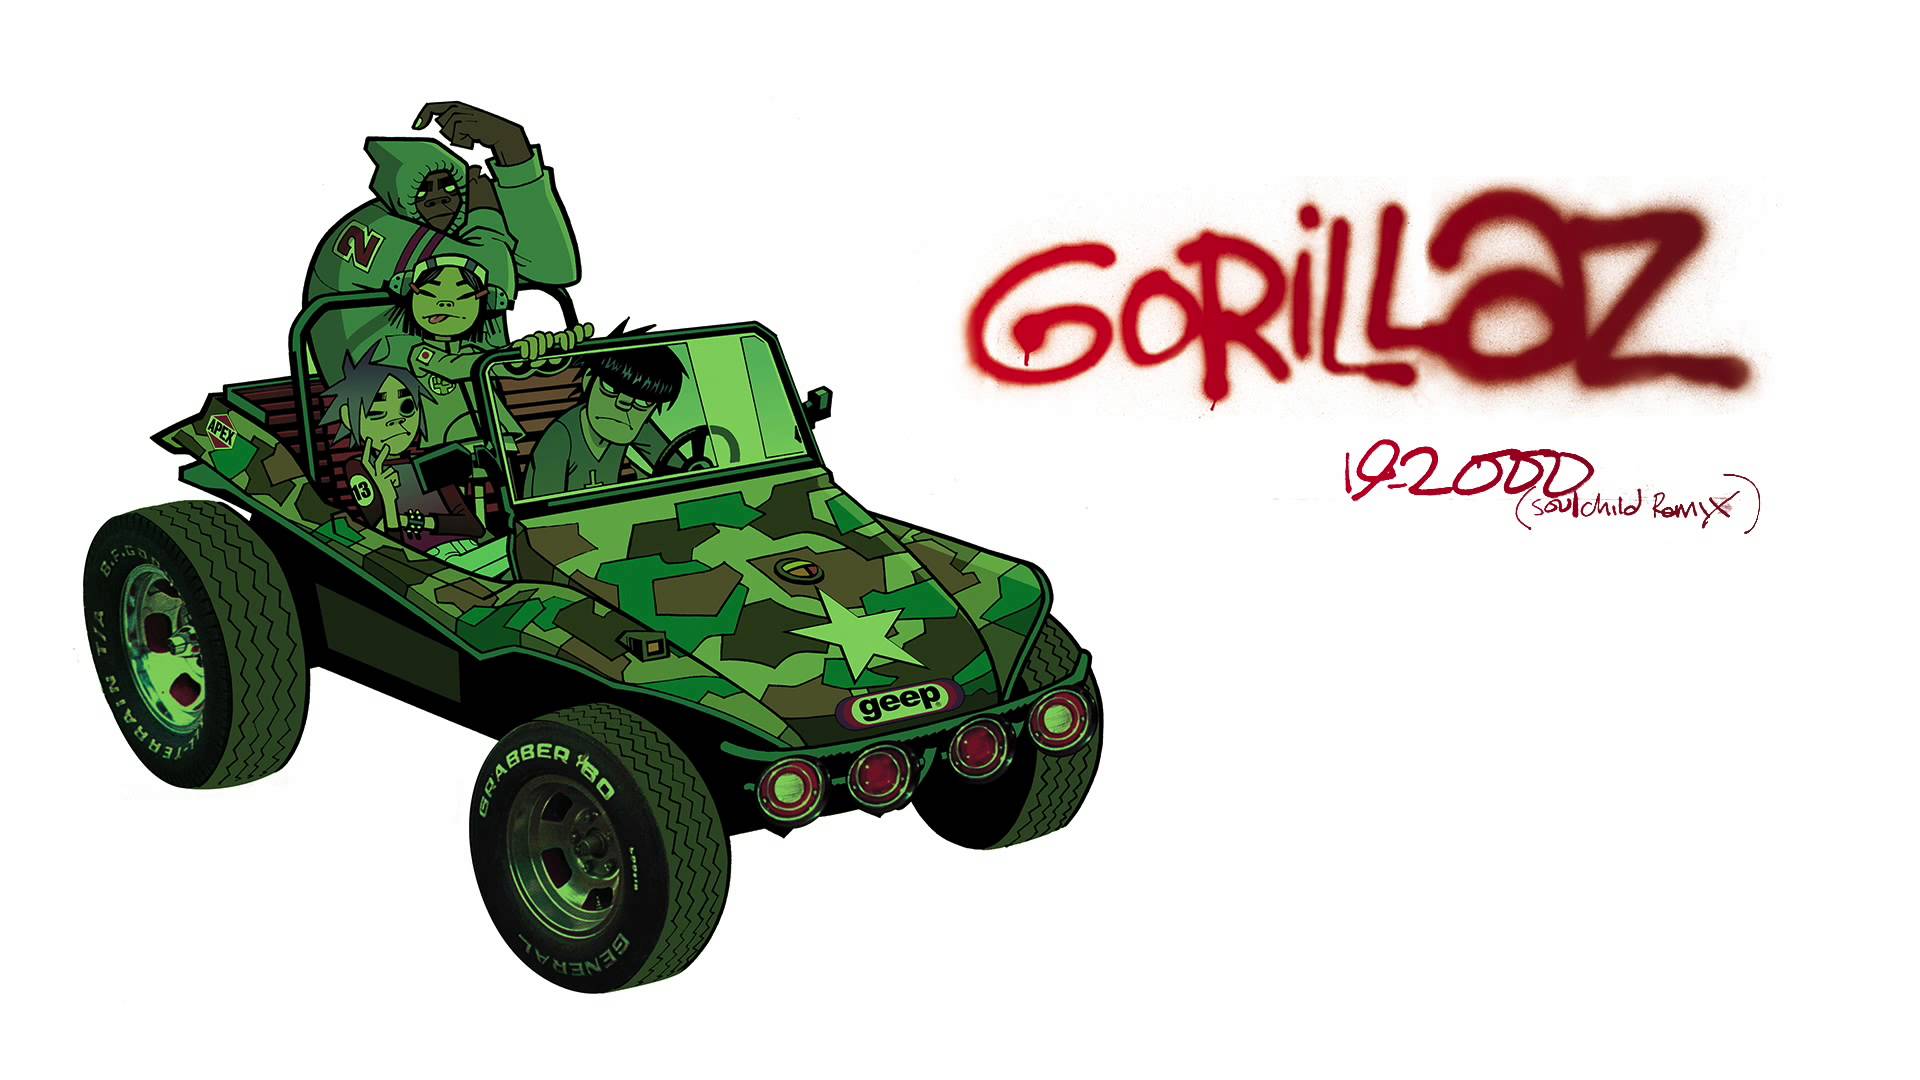 Gorillaz 2000 (Soulchild Remix)